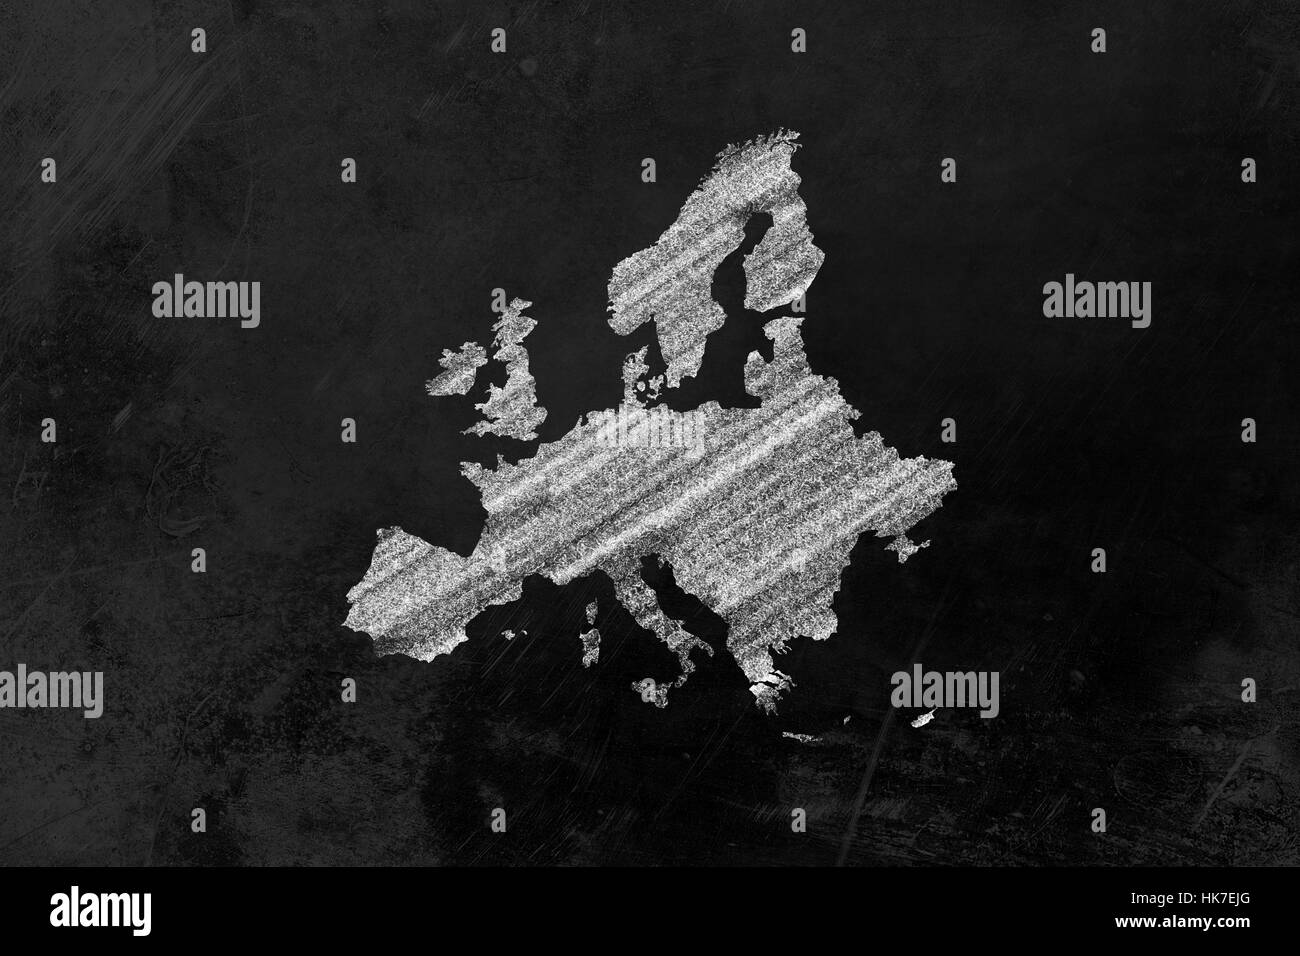 Europa como un dibujo en una pizarra Foto de stock